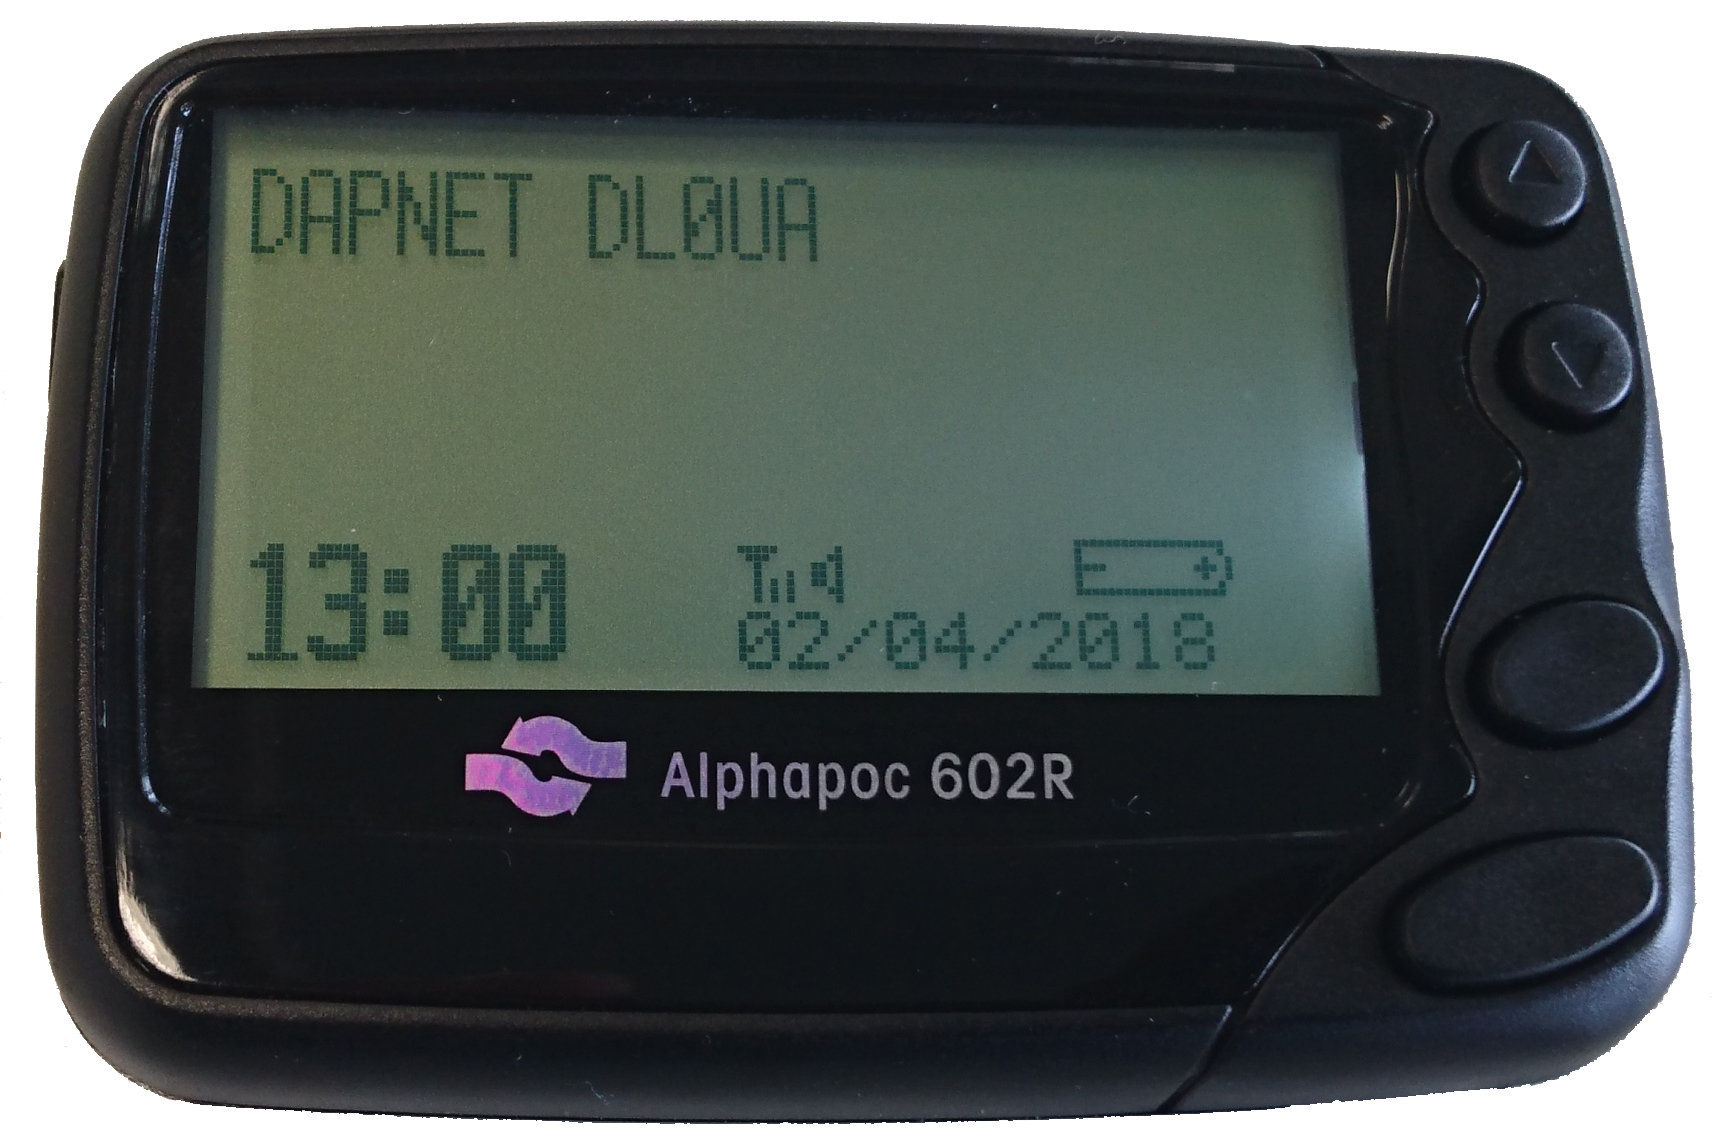  AlphaPoc 602R X4 